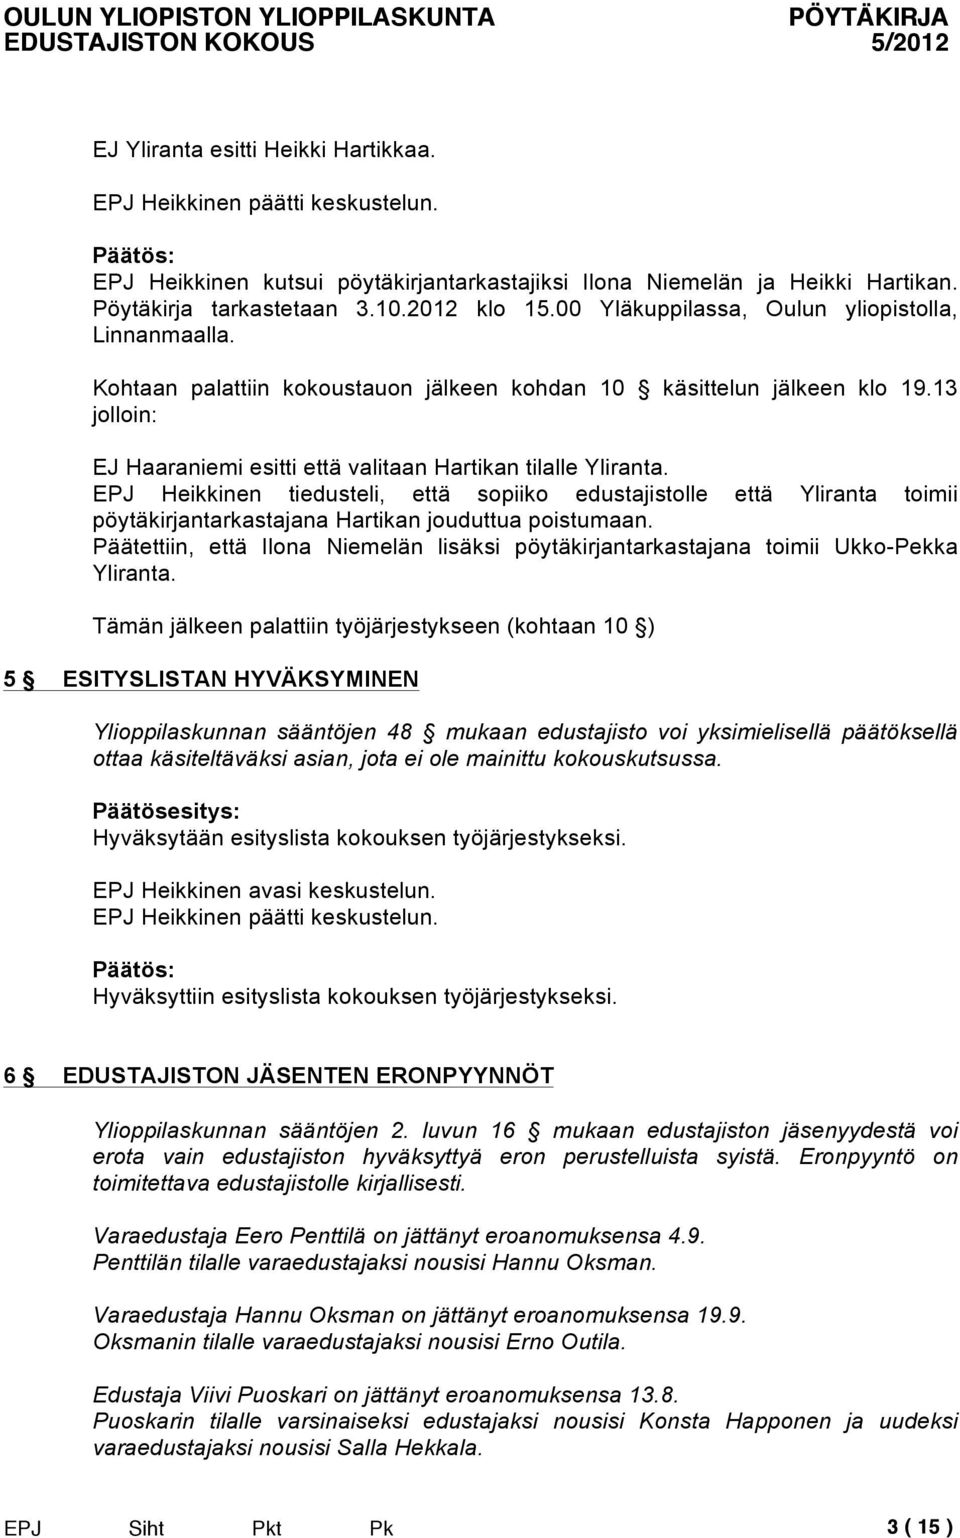 EPJ Heikkinen tiedusteli, että sopiiko edustajistolle että Yliranta toimii pöytäkirjantarkastajana Hartikan jouduttua poistumaan.